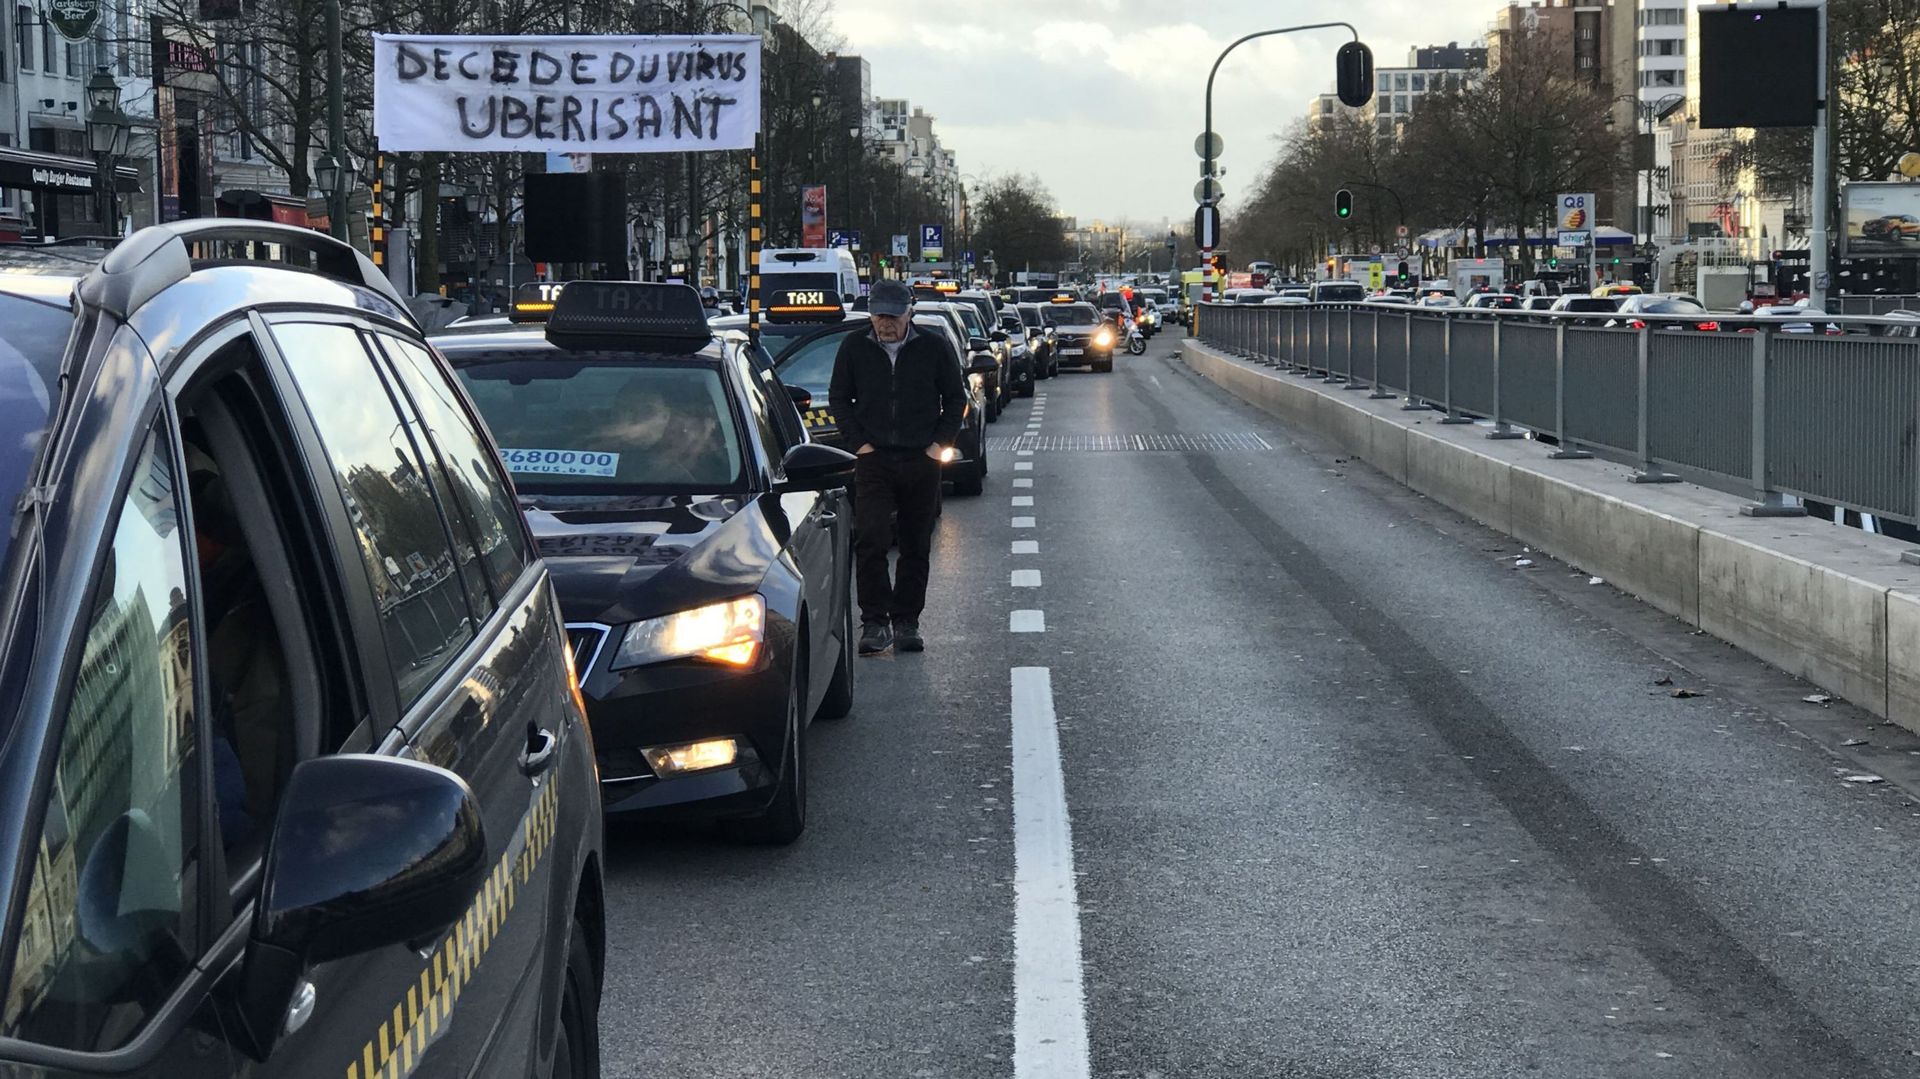 Bruxelles: les taxis manifestent en un cortège funèbre symbolique ce mardi